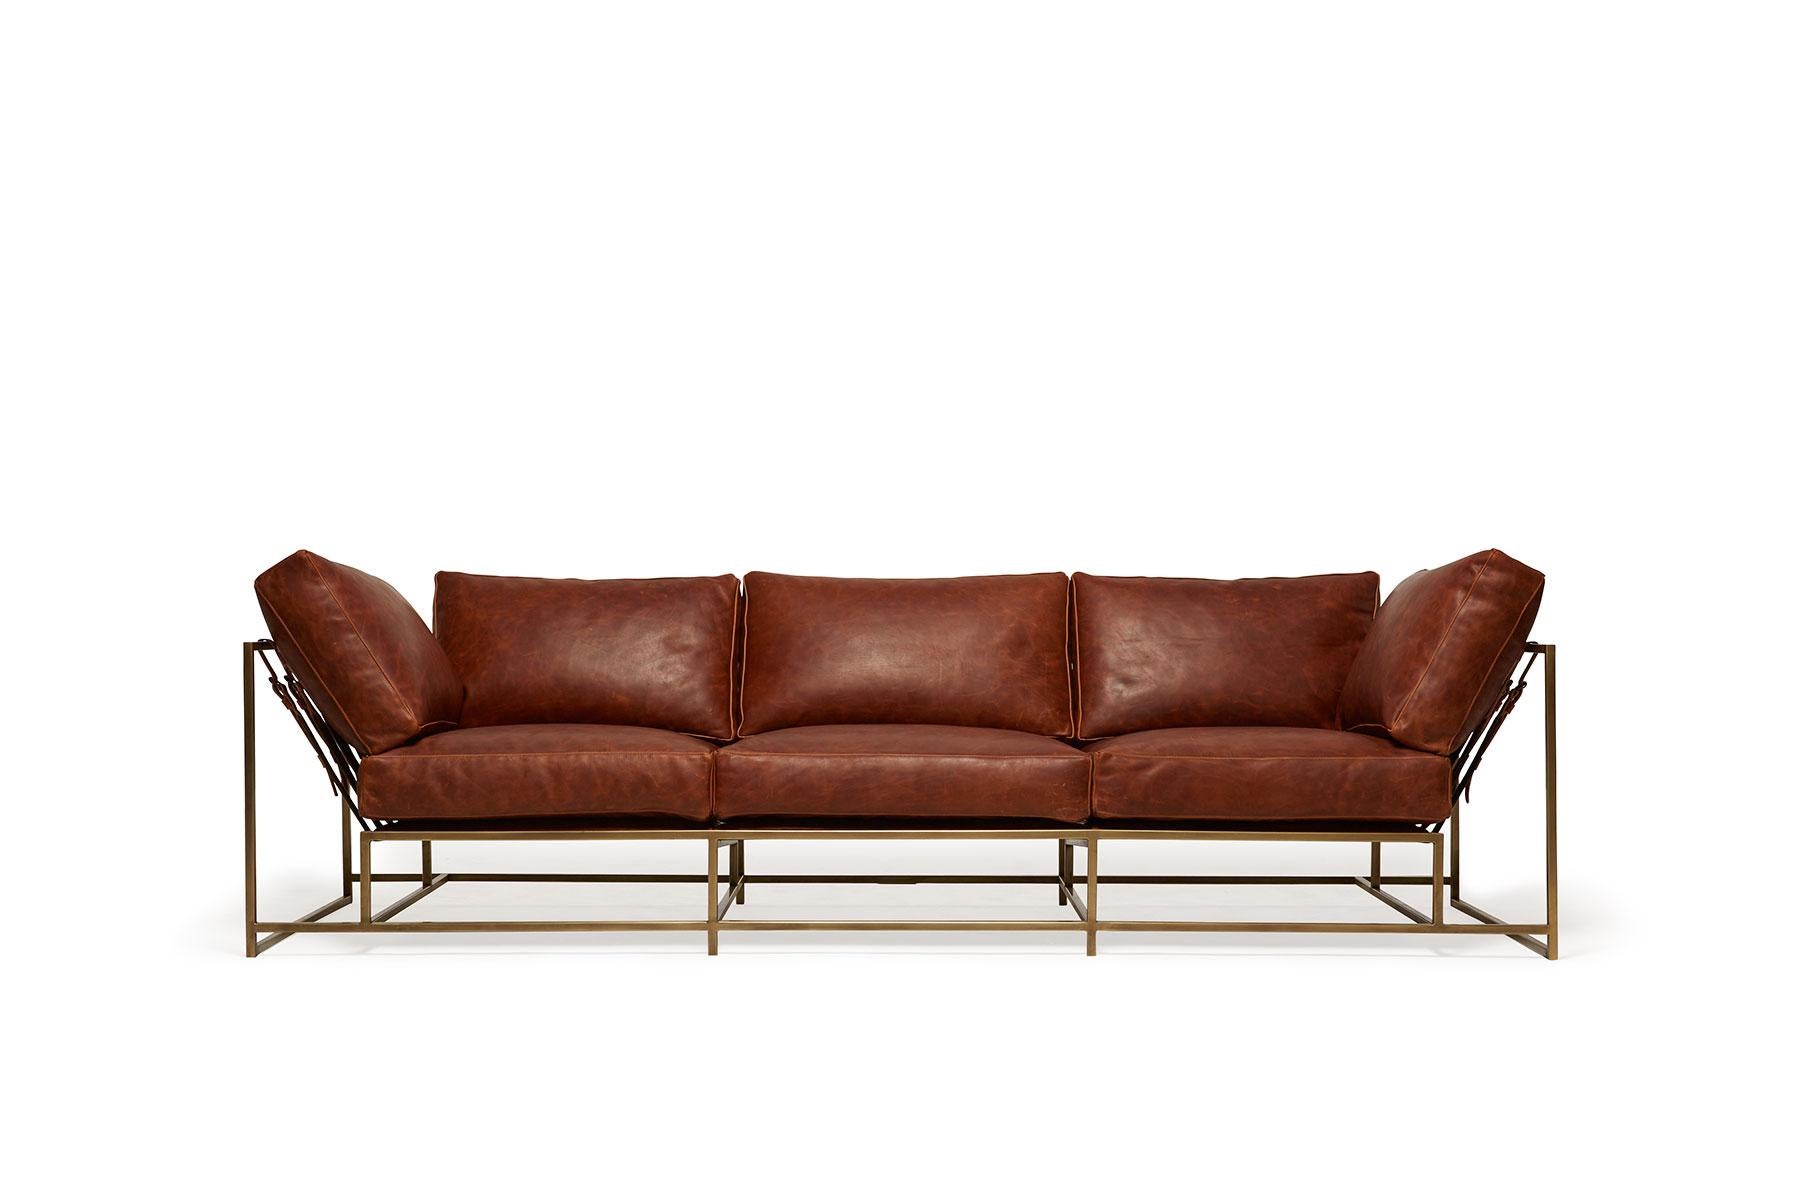 Dieses 2011 entworfene Sofa war das erste Stück der The Inheritance Collection'S von Stephen Kenn. Ausgehend von der Neugier, wie Möbel konstruiert wurden, ist die Collection'S das Ergebnis einer Neuinterpretation typischer gepolsterter